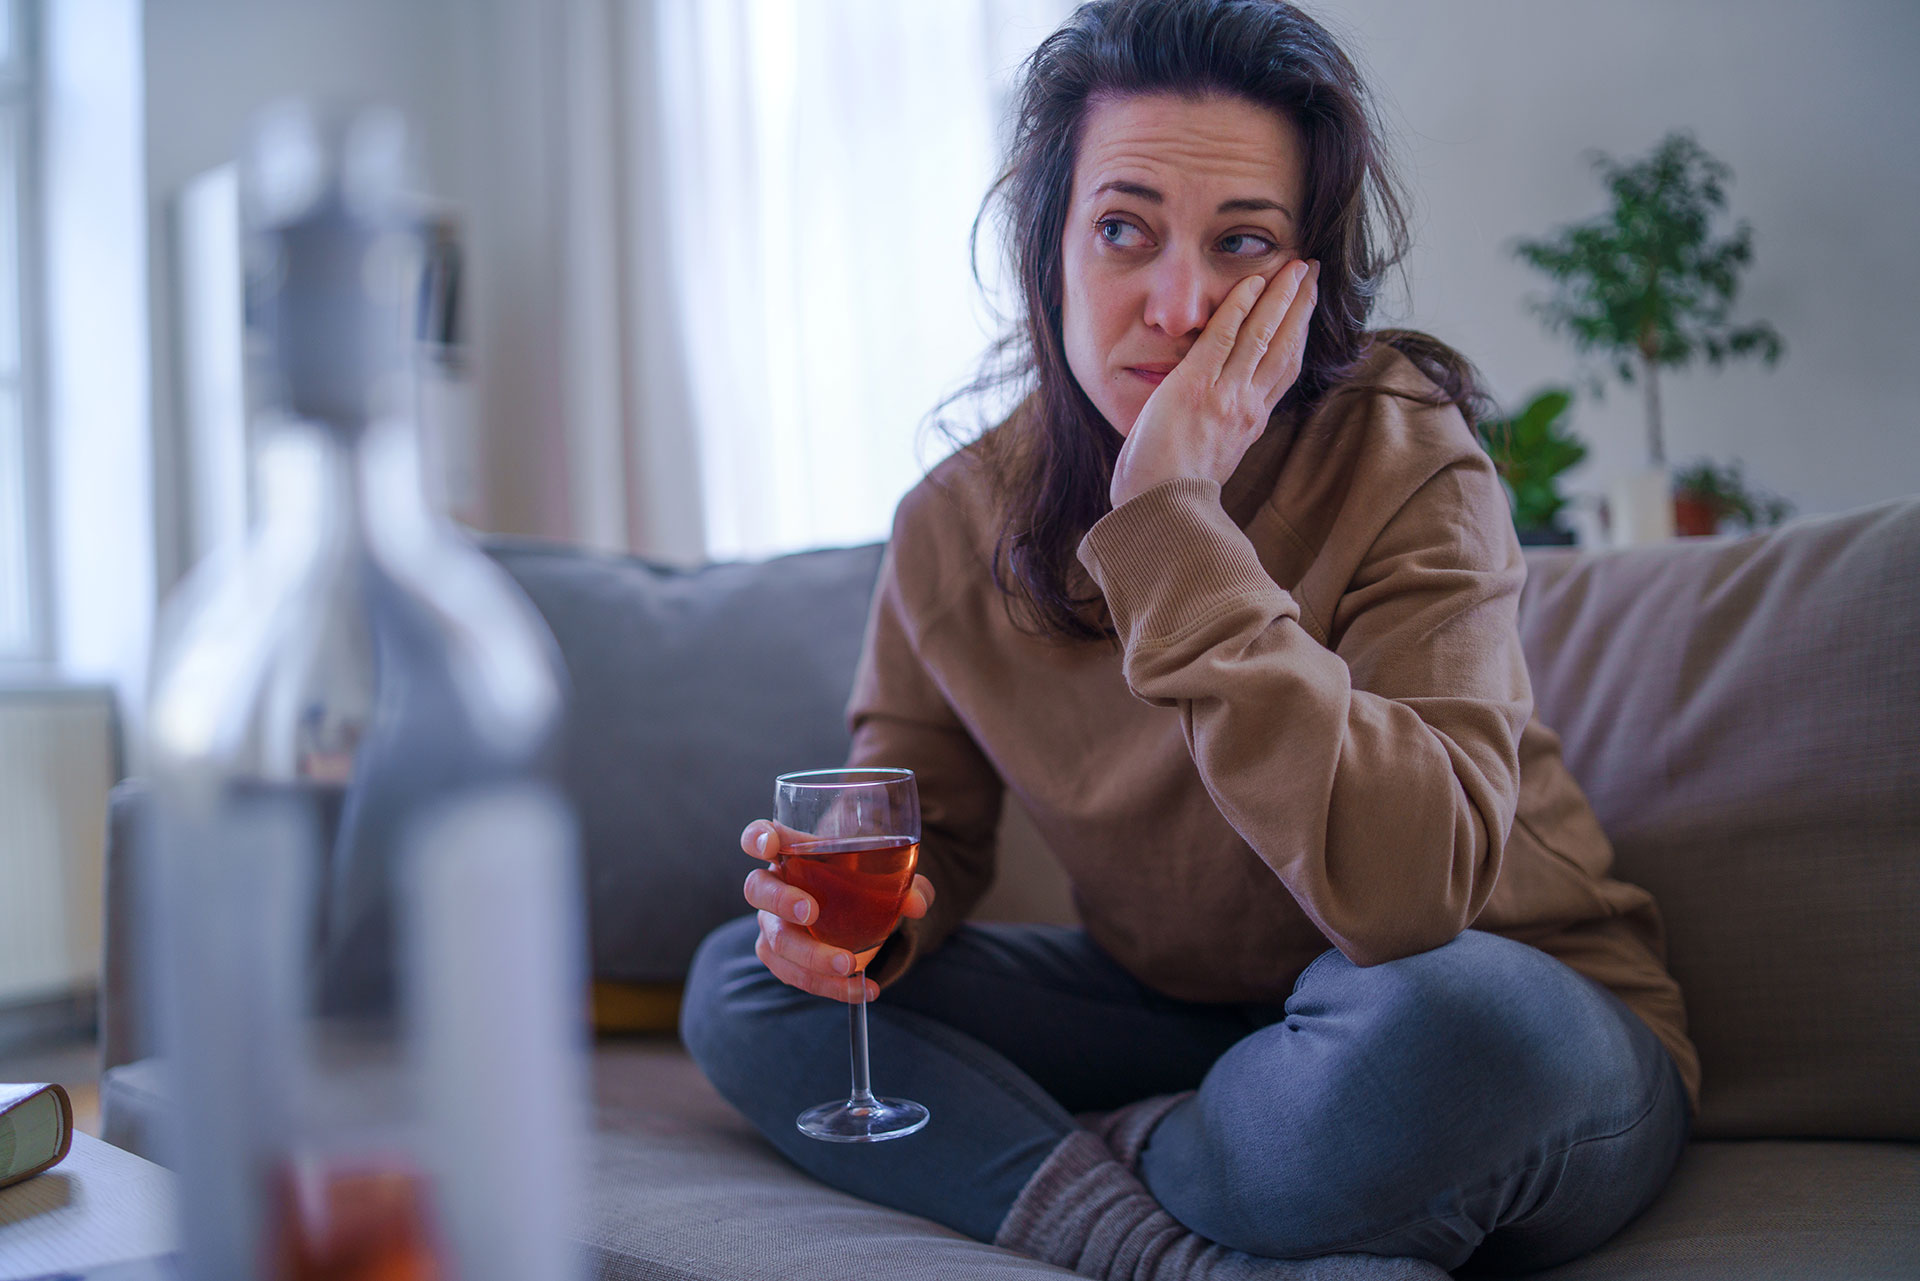 La percepción de riesgo del consumo de alcohol para otros cánceres, como mama, labio, esófago, entre otros, casi no existe en la población hoy (Getty Images)